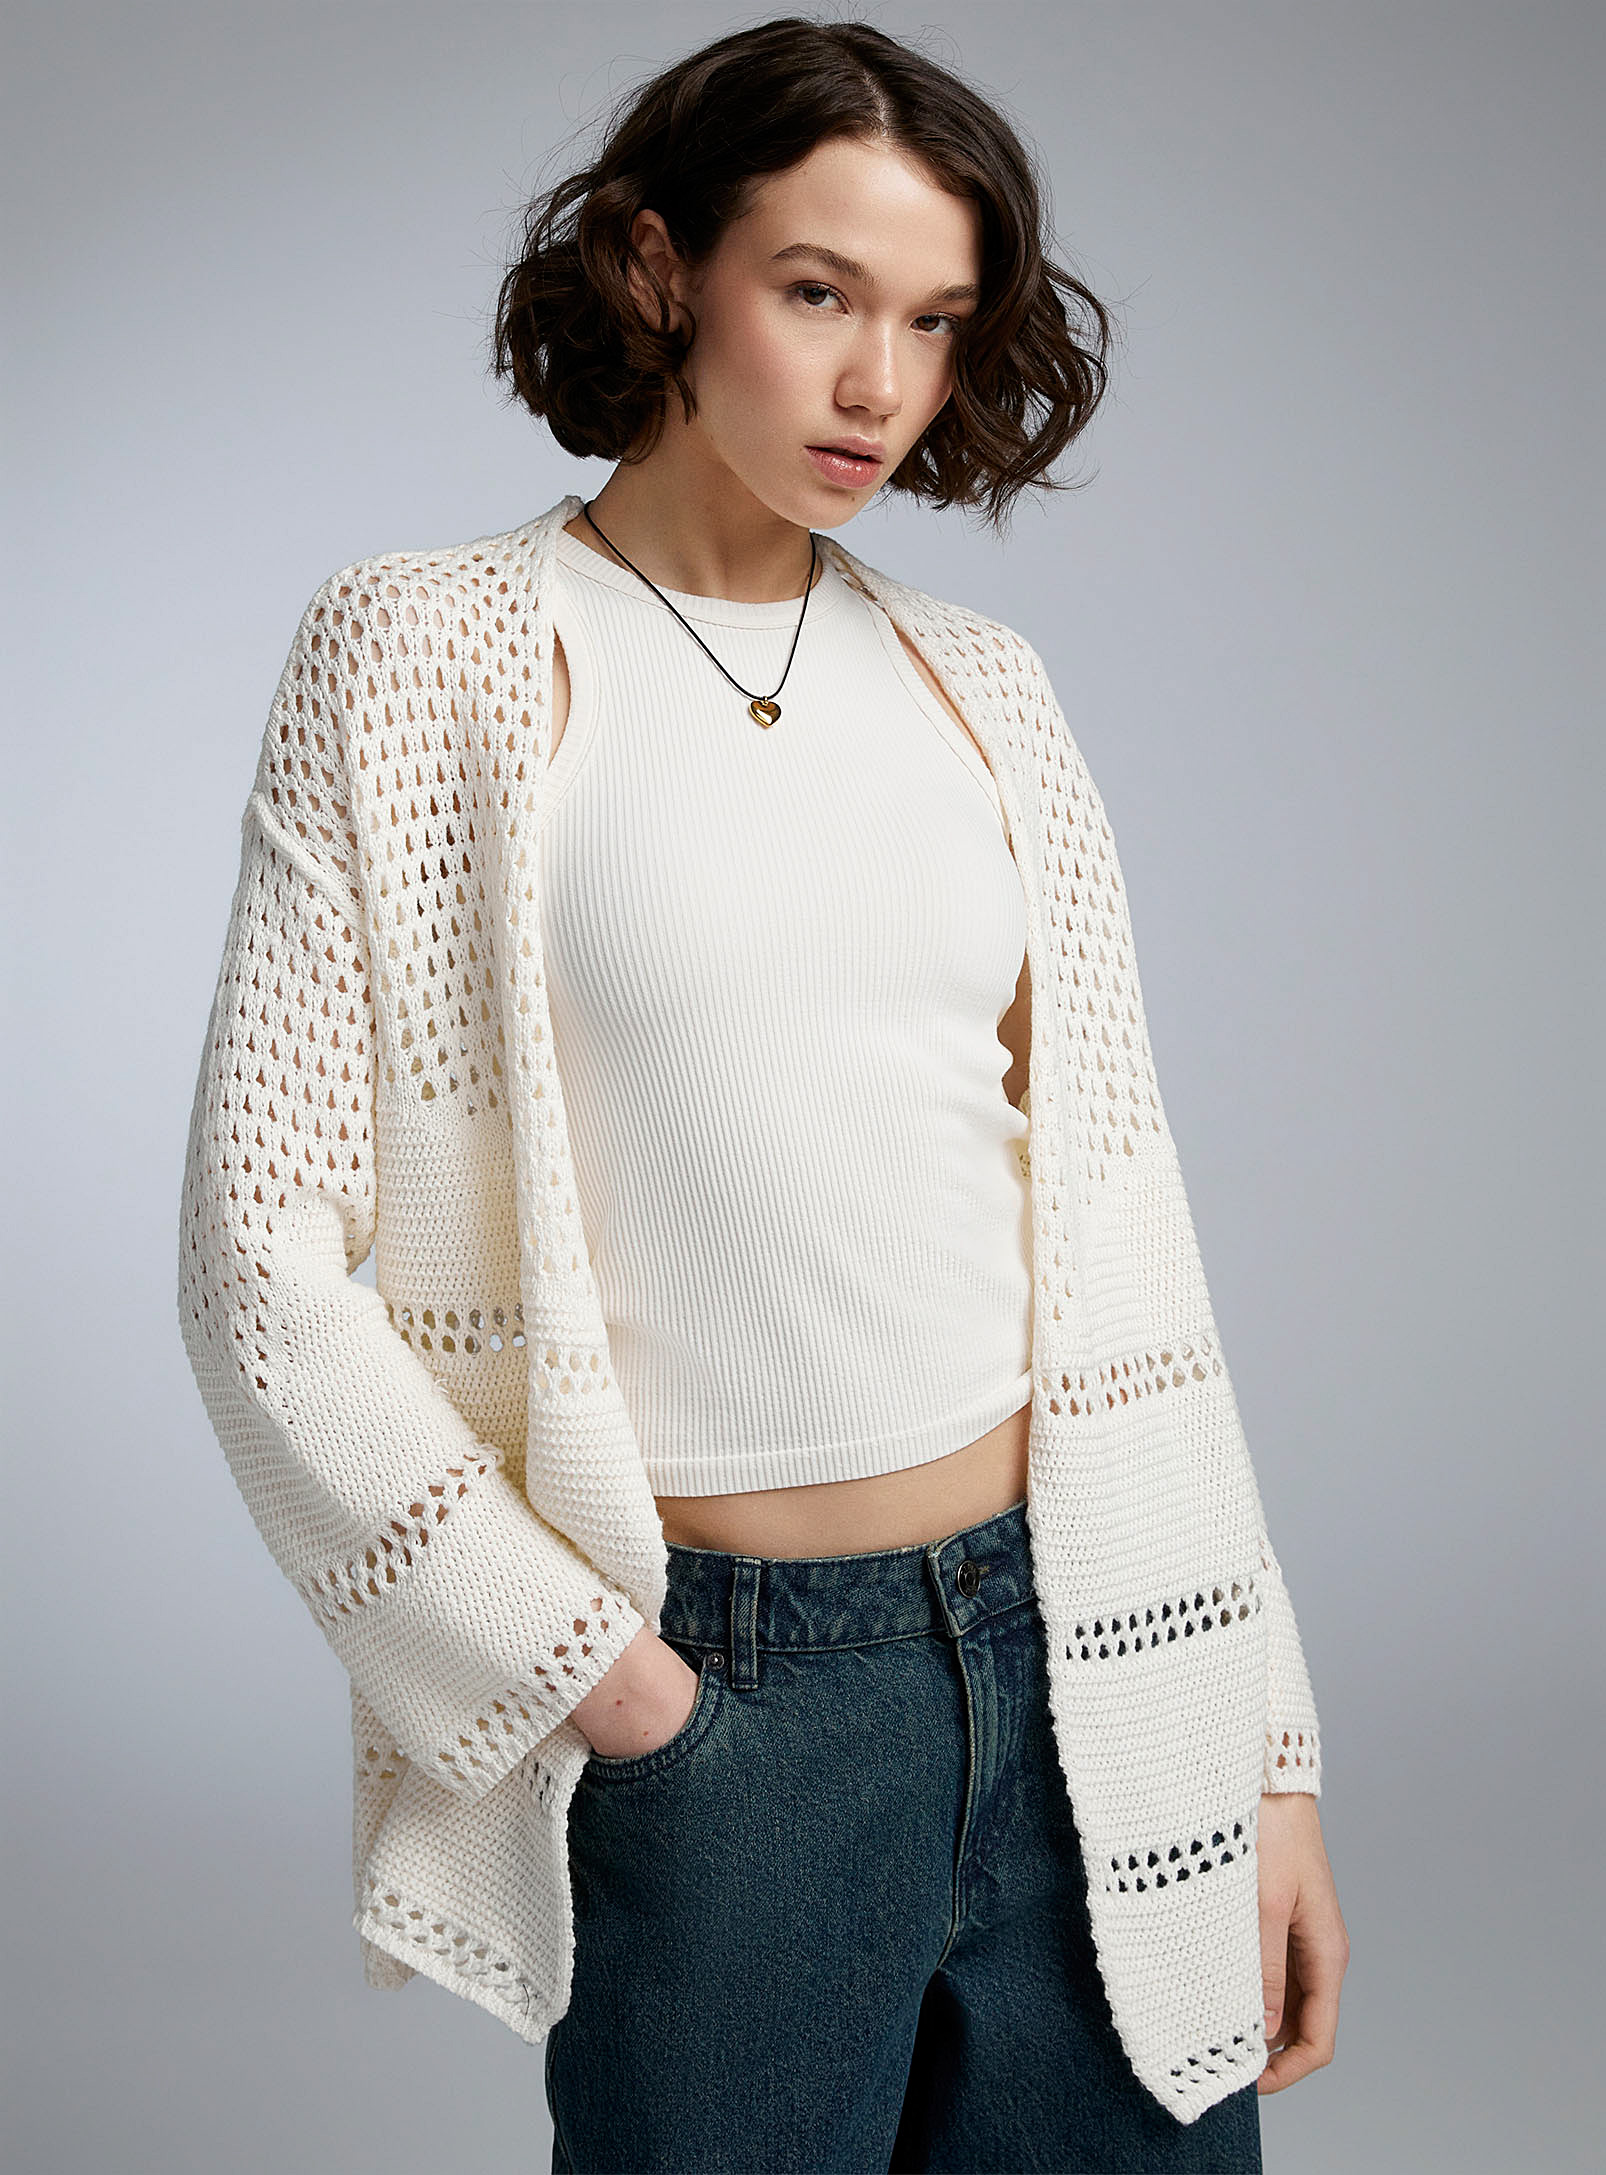 Twik - Women's Crocheted-style open Cardigan Sweater